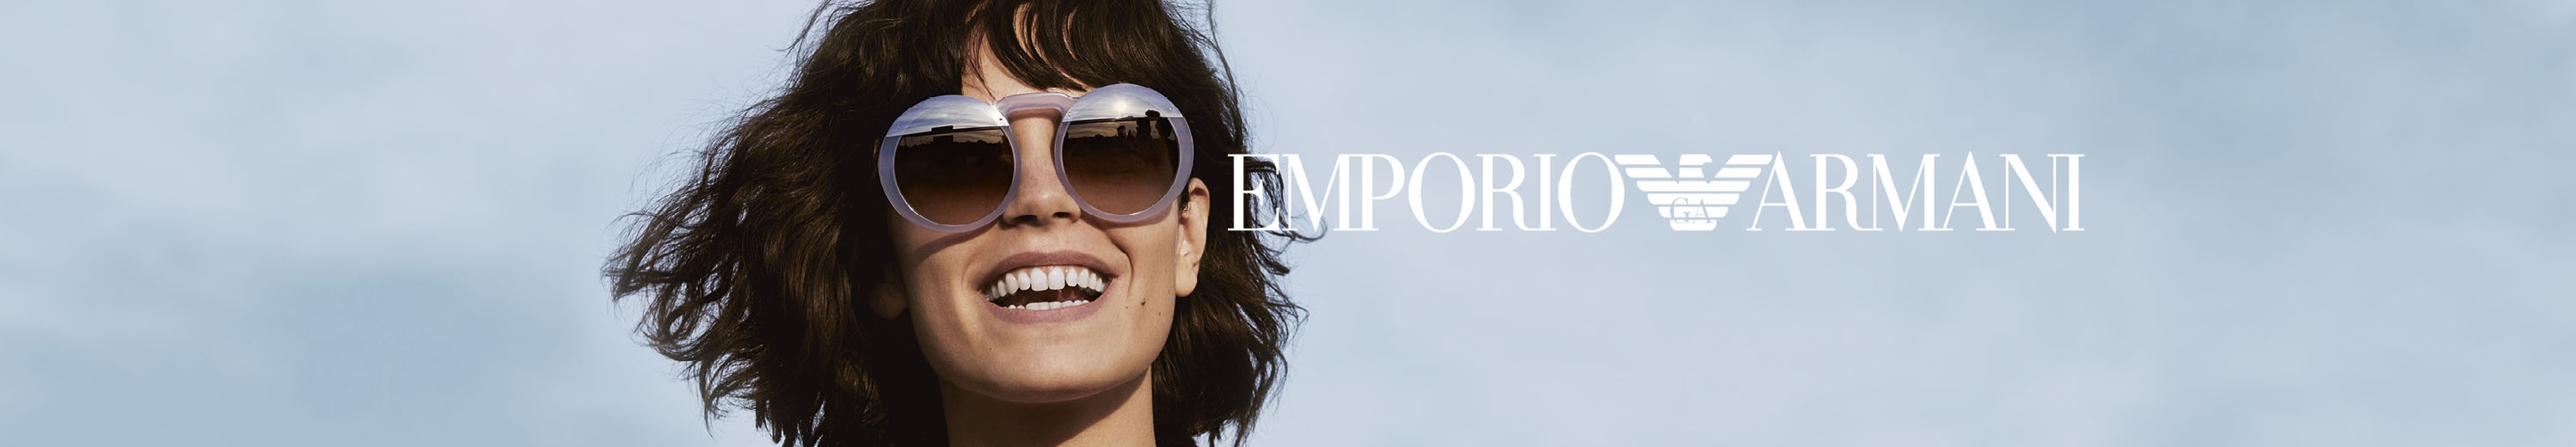 Emporio Armani Sunglasses for Women